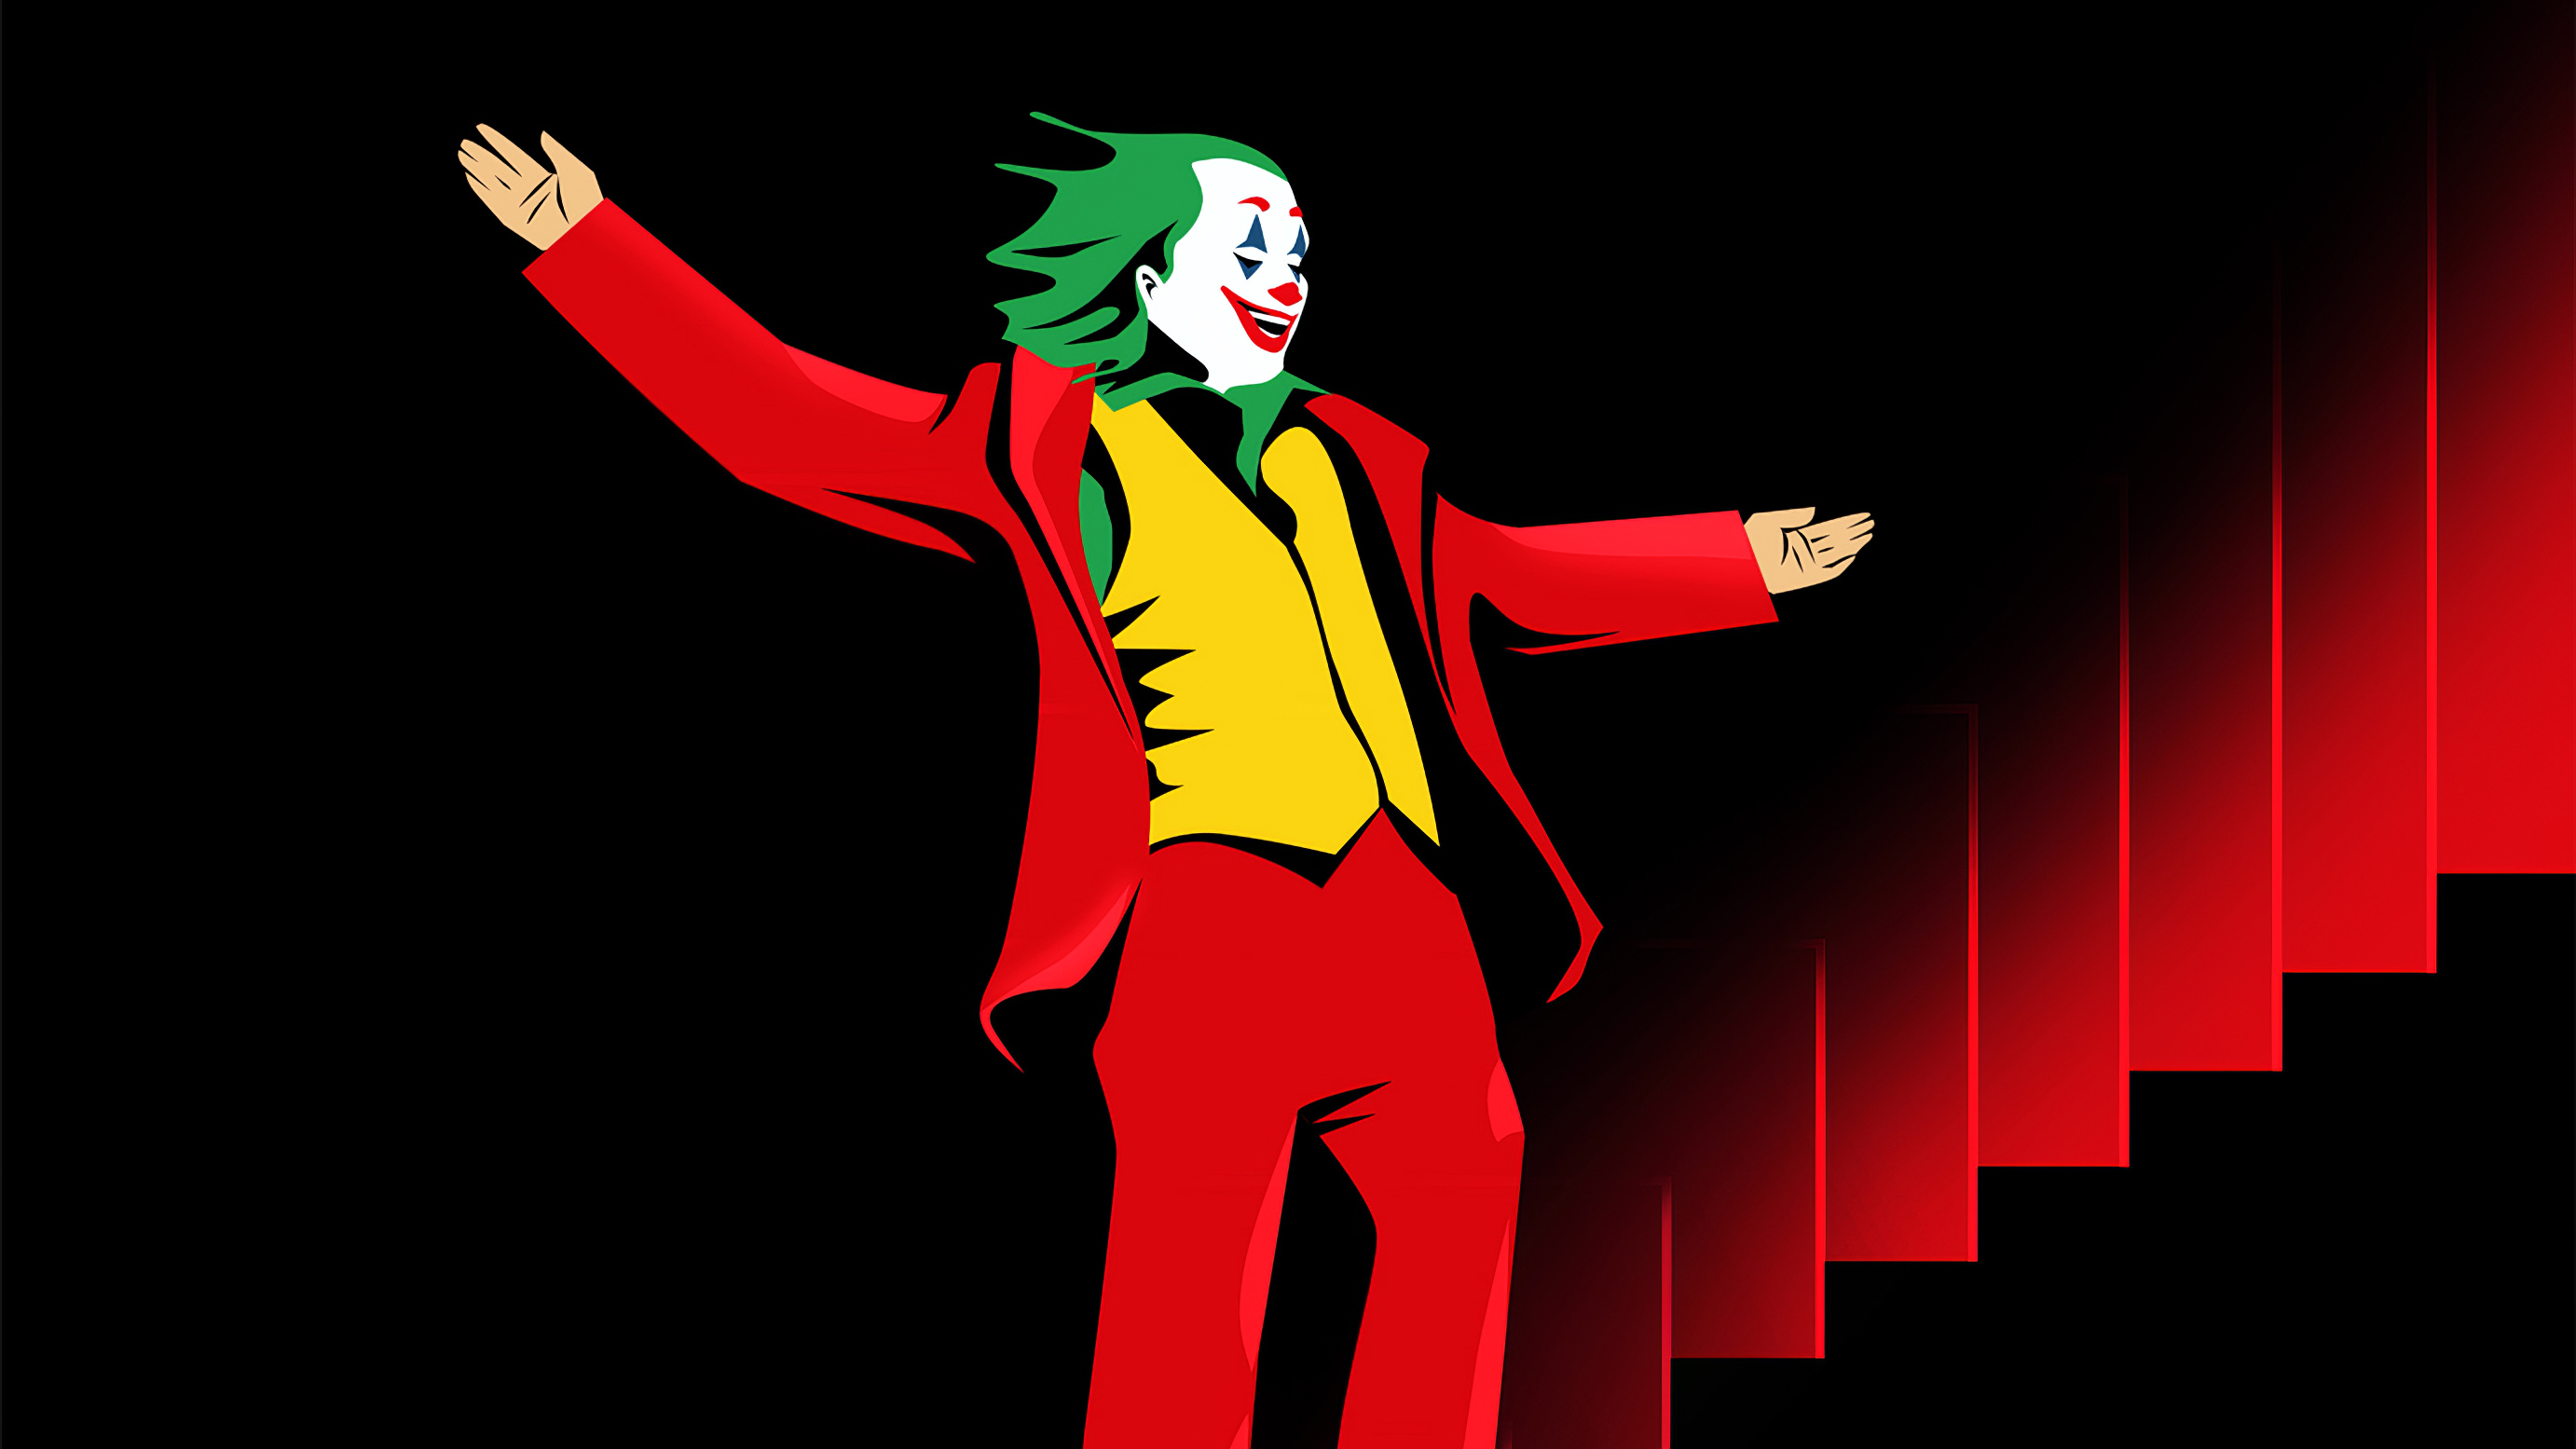 Joker Dancing Art Wallpapers